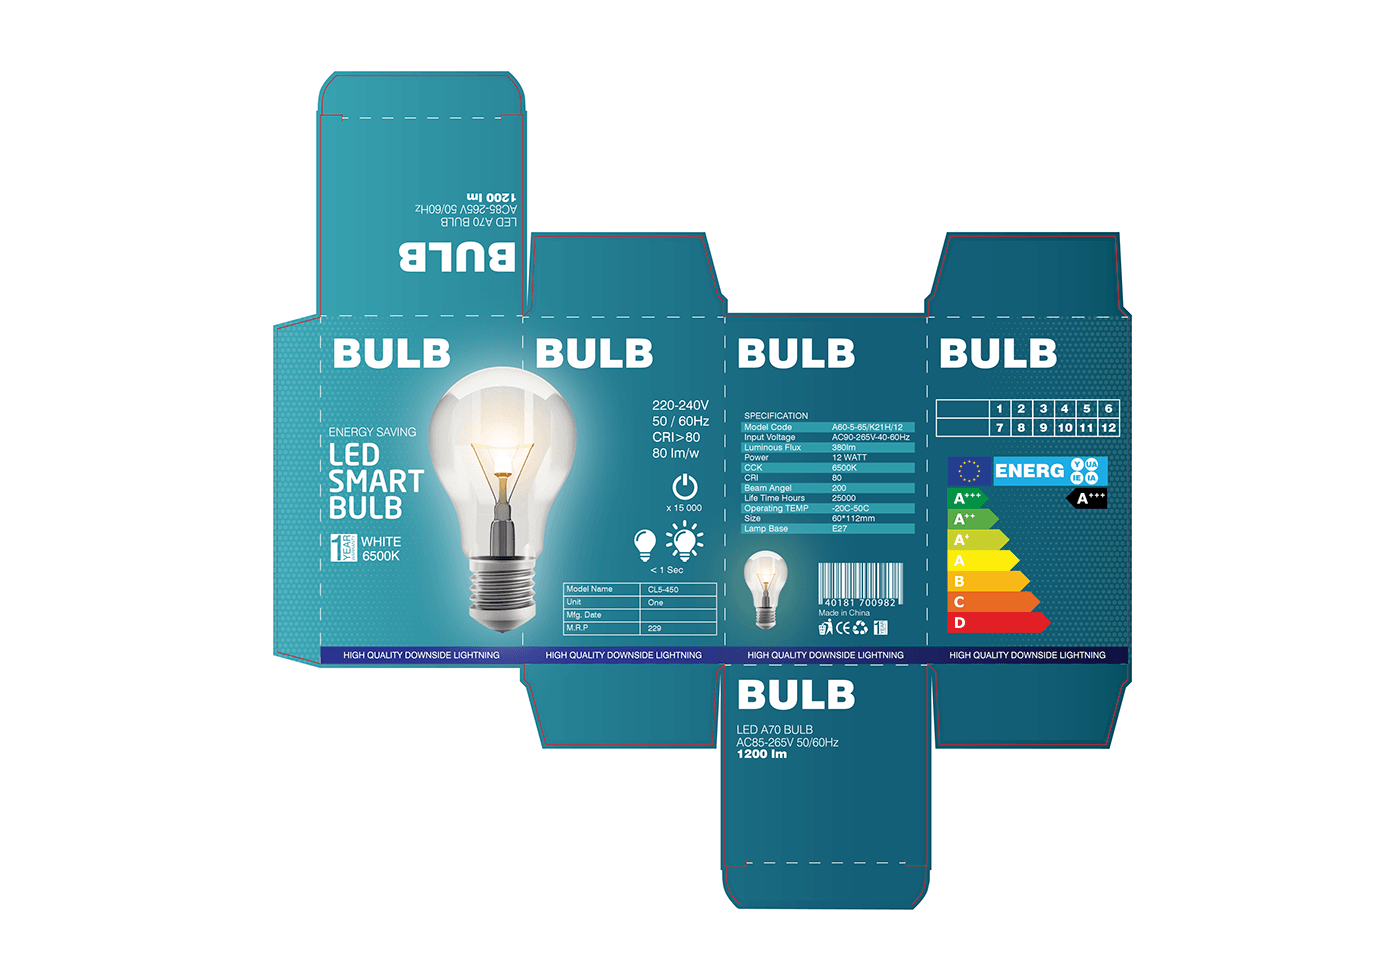 Packaging packaging design packagingdesign graphic design  label design branding  package package design  dieline bulb